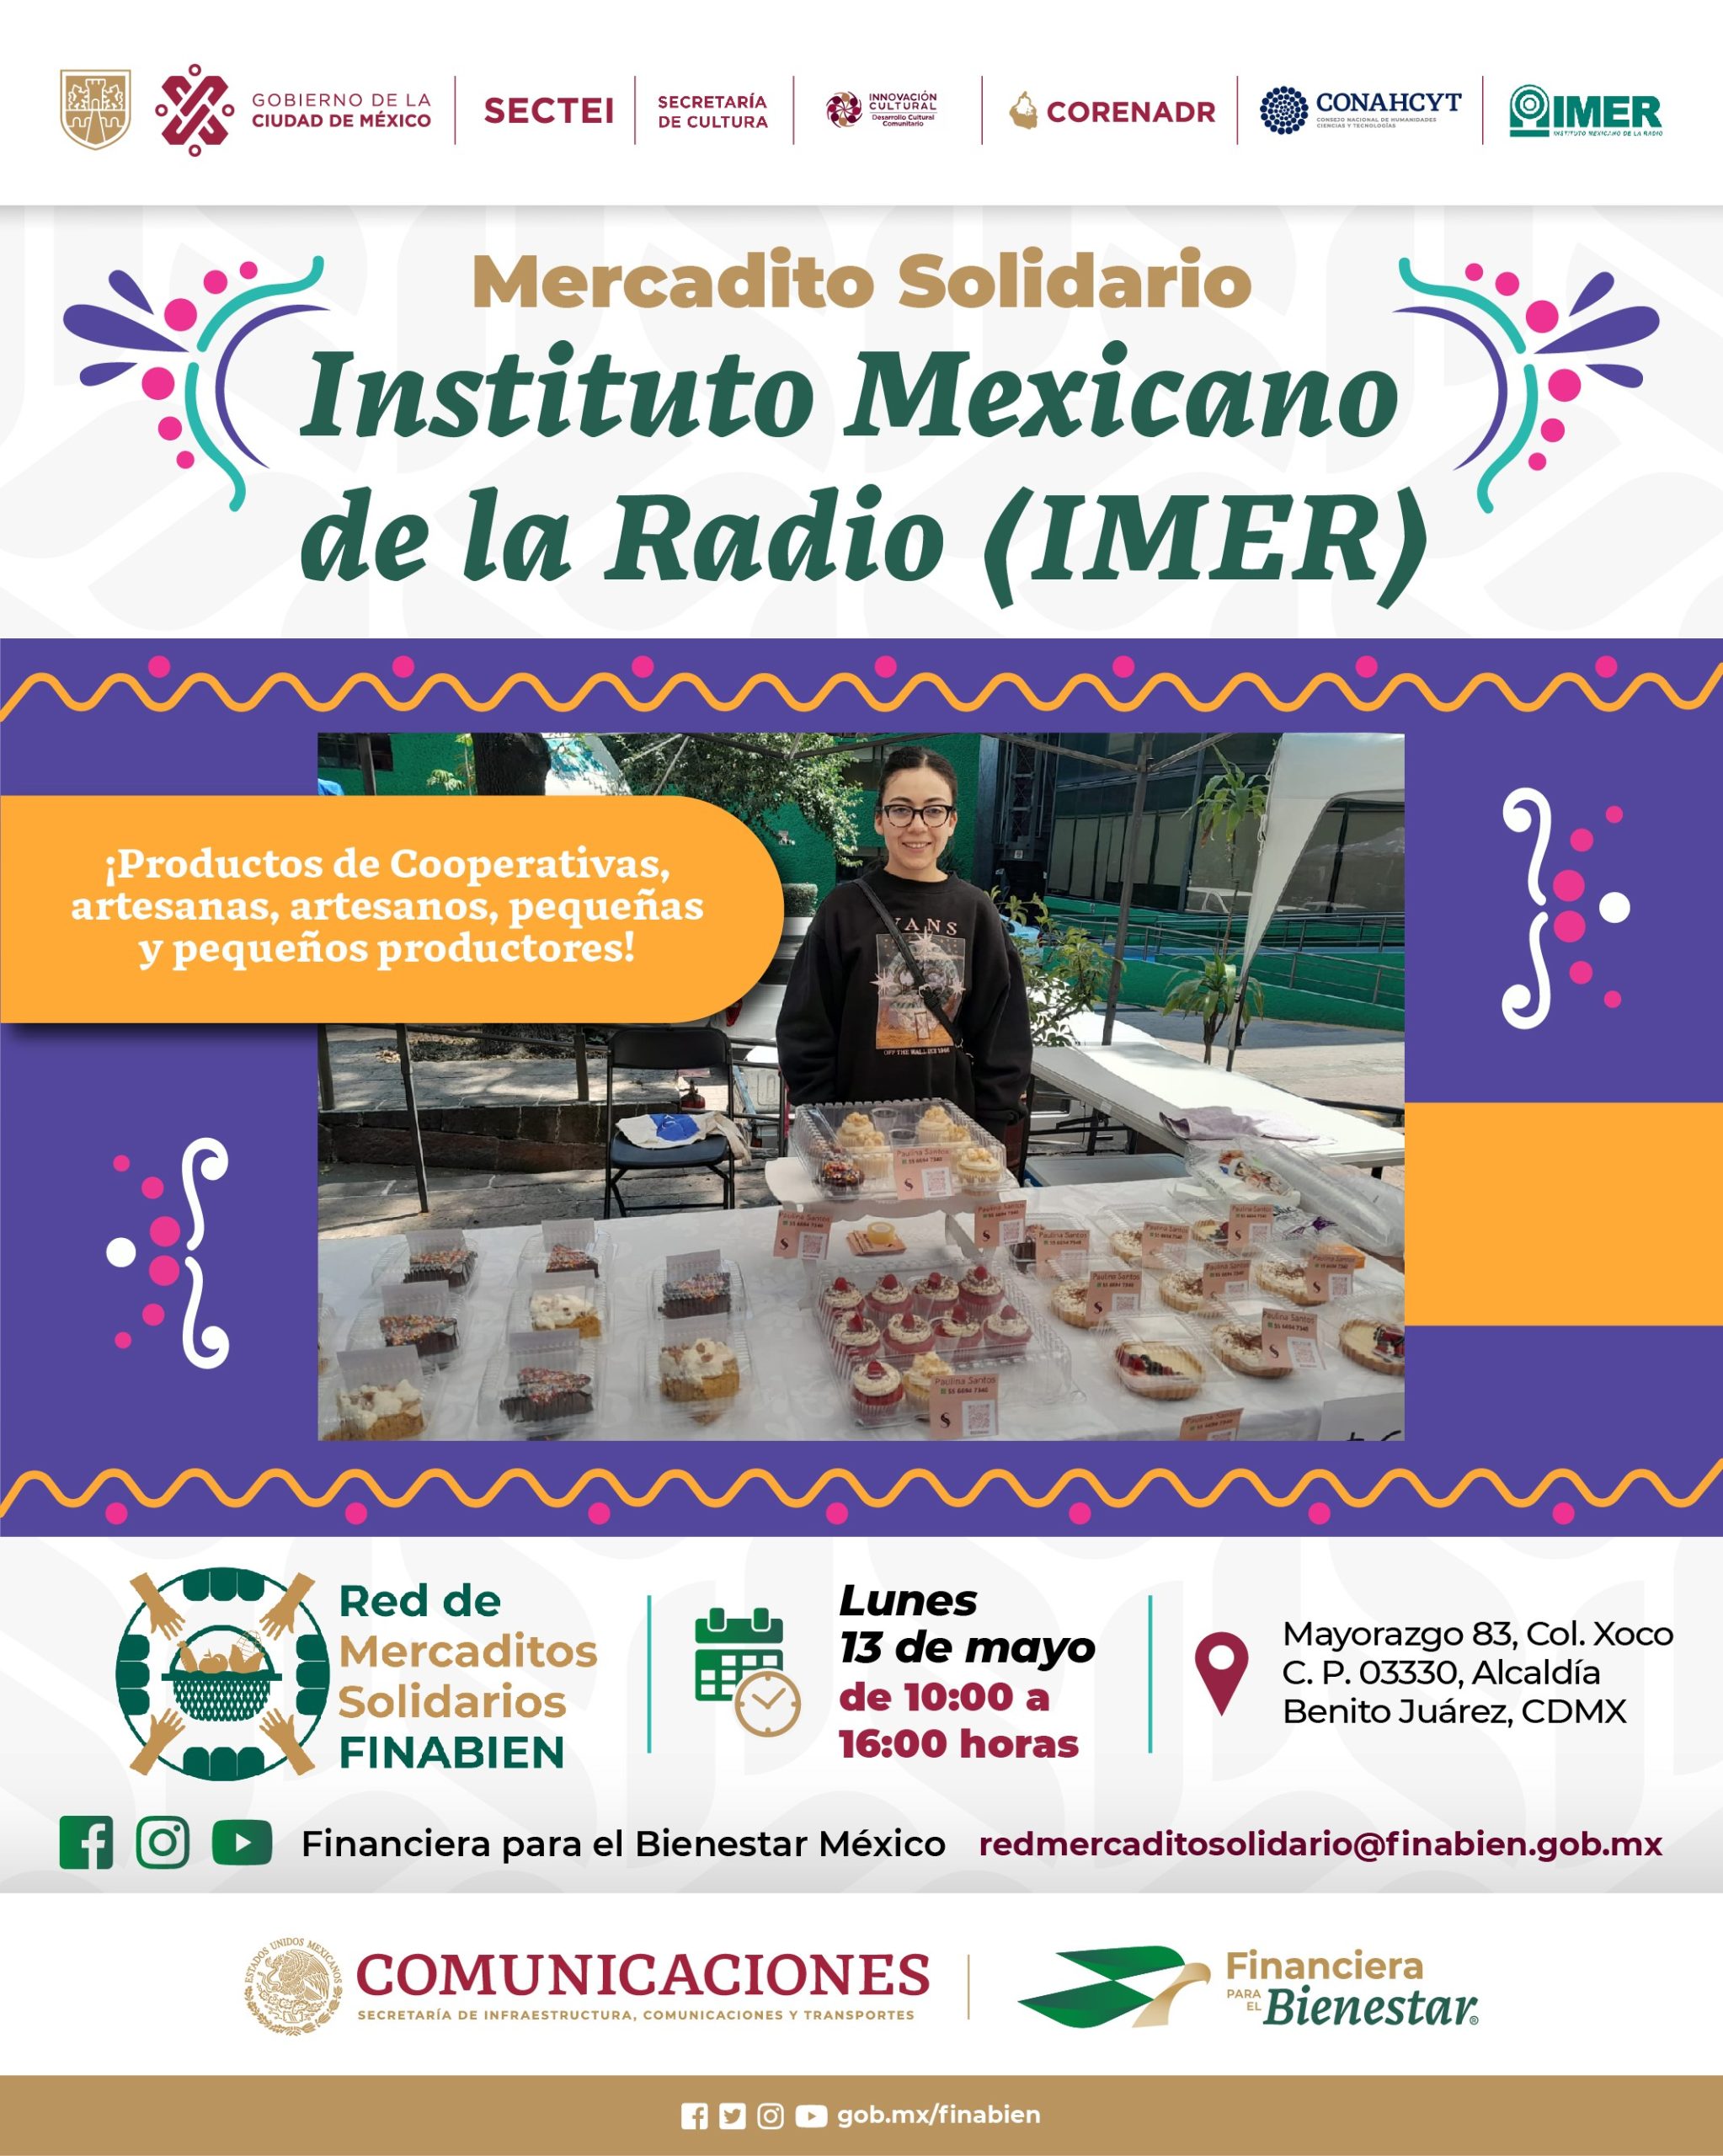 Mercadito Solidario, Instituto Mexicano de la Radio (IMER)